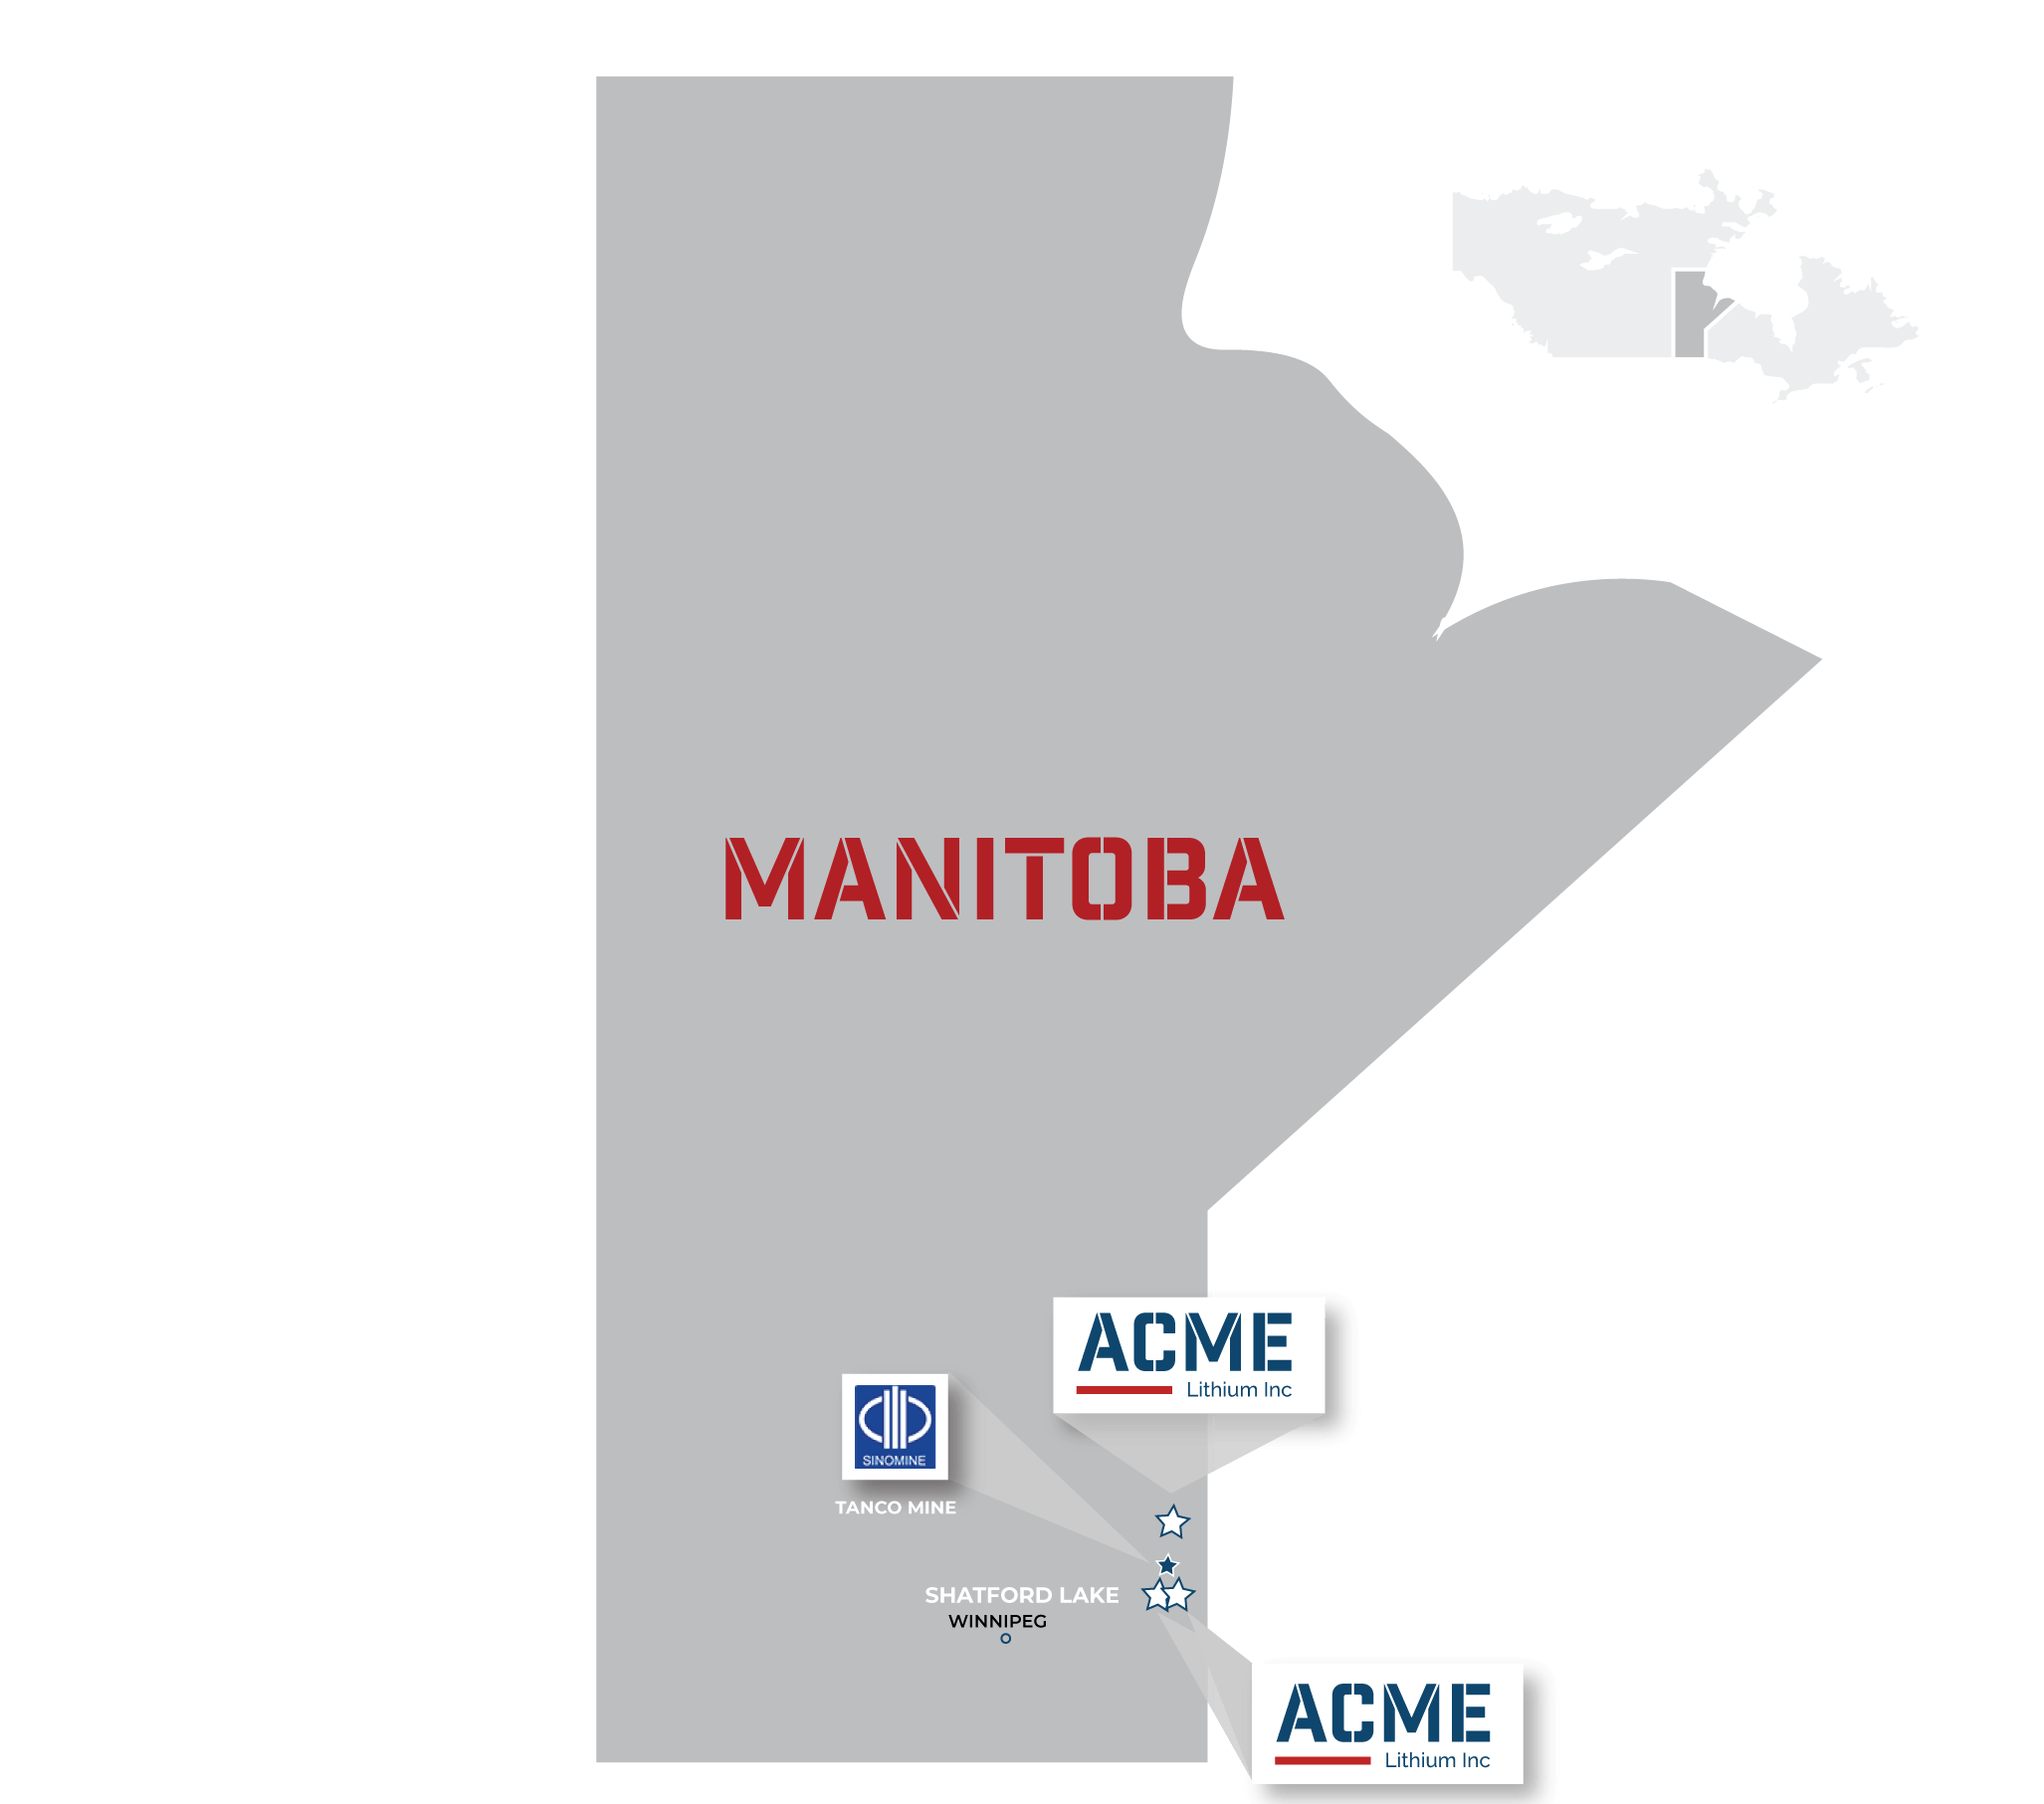 ACME LIthium properties in Manitoba, Canada